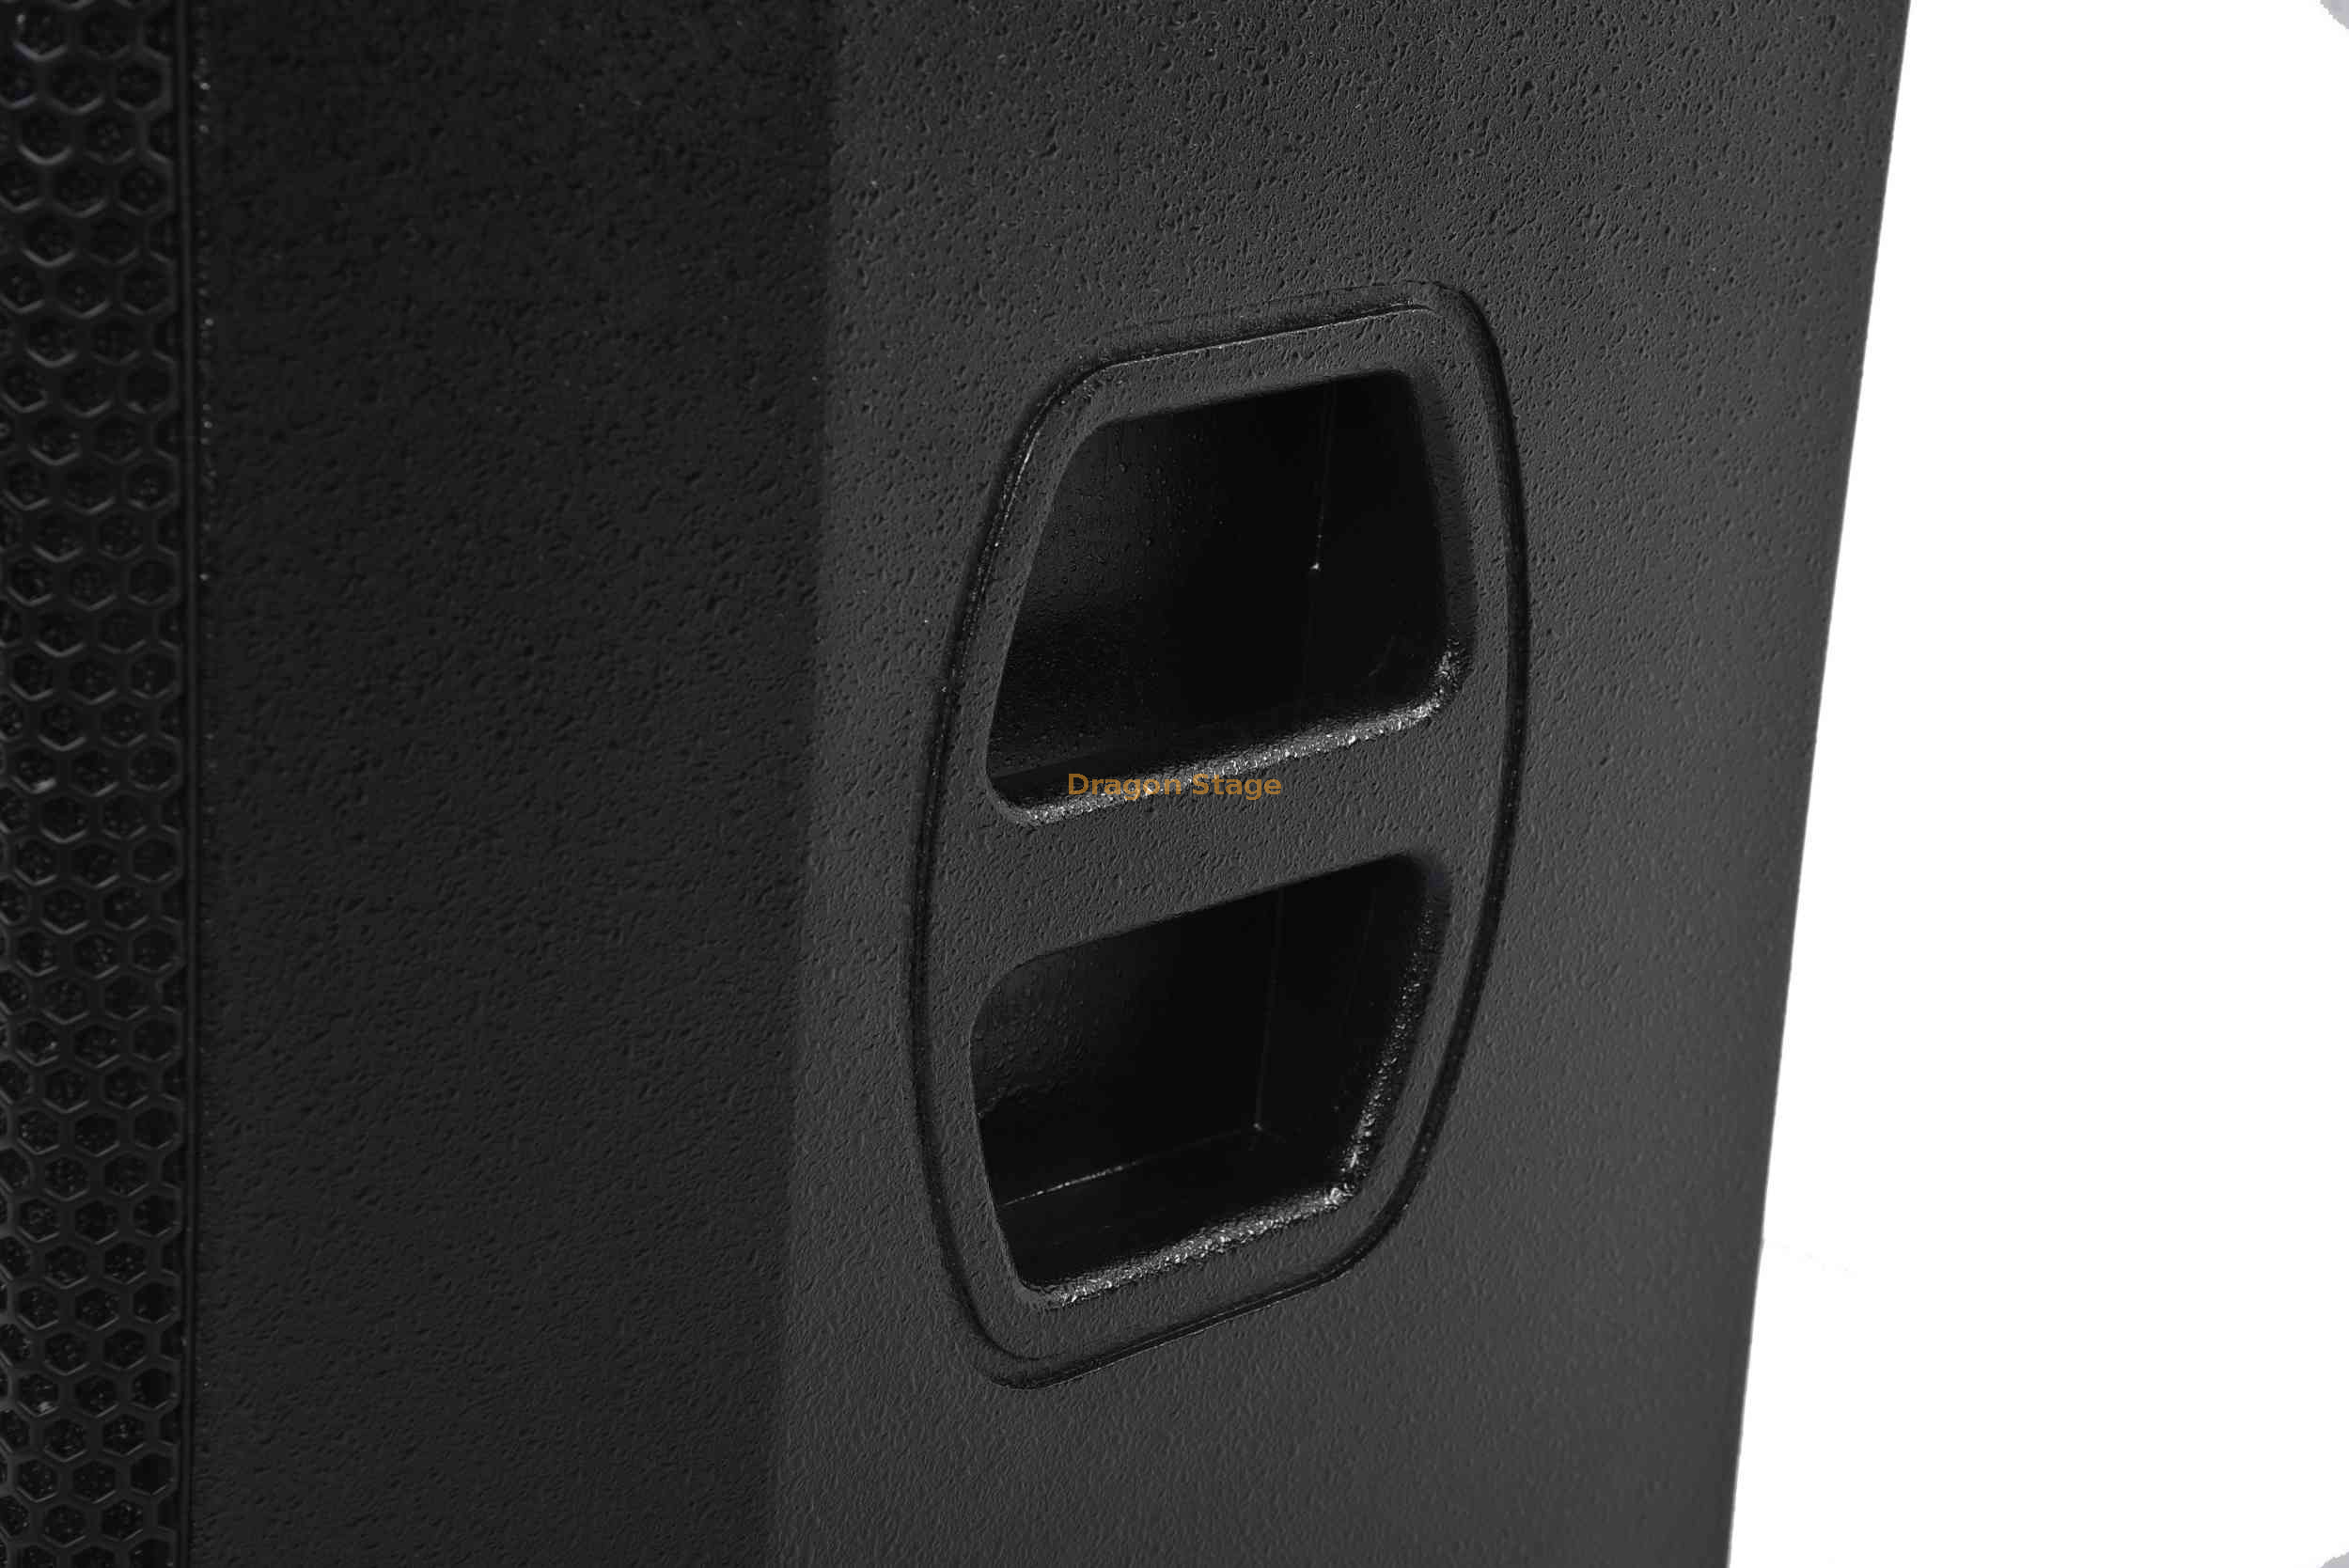 Pa Speaker Deals Live Sound Equipment Événement d'intérieur de haut-parleur passif de 10 pouces